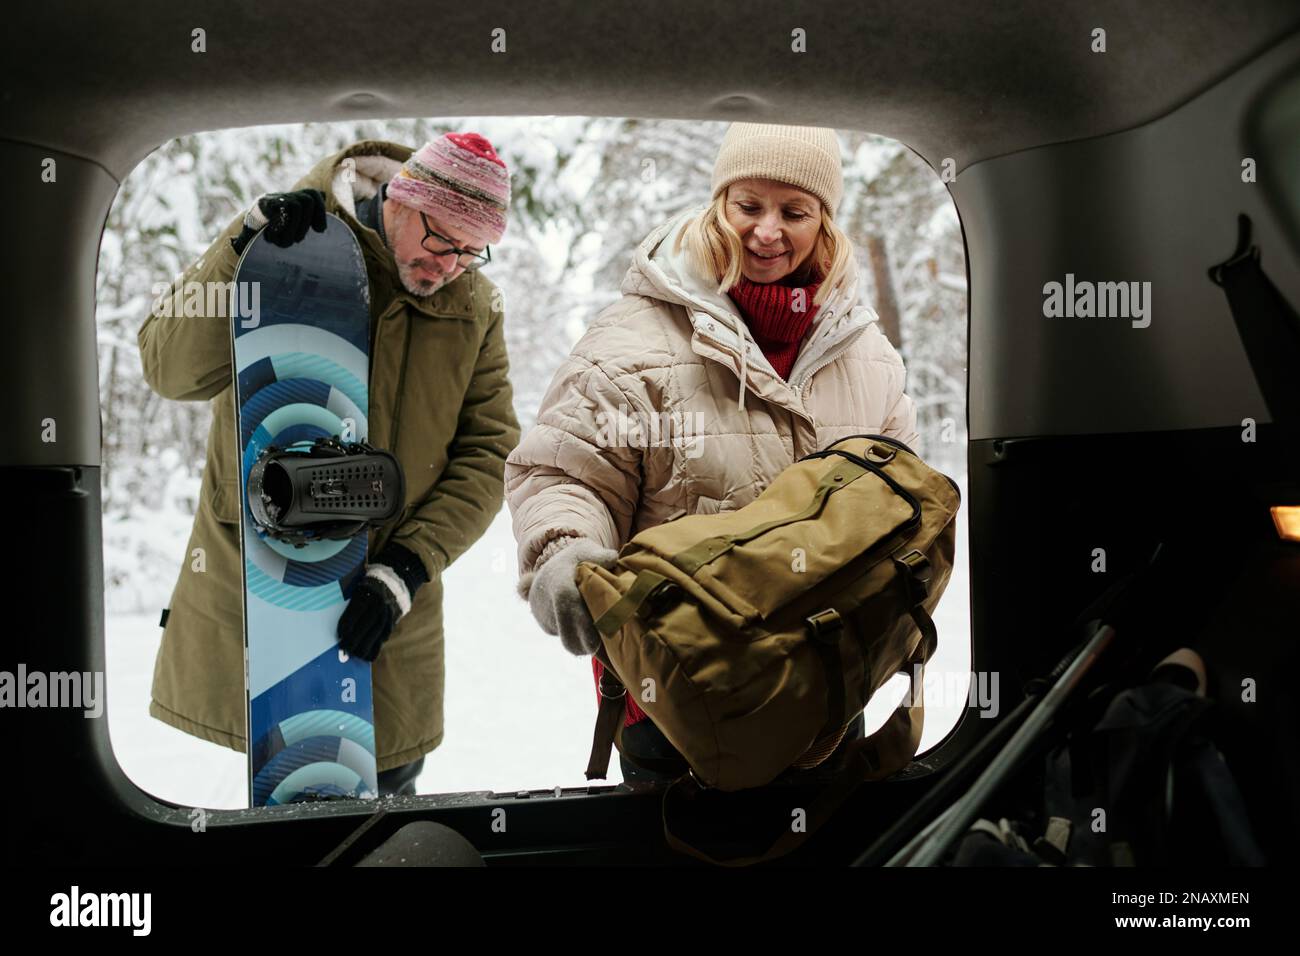 Seniorin legt Rucksack in den Kofferraum, während ihr Mann mit Snowboard während ihres Wochenendausflugs neben ihr steht Stockfoto